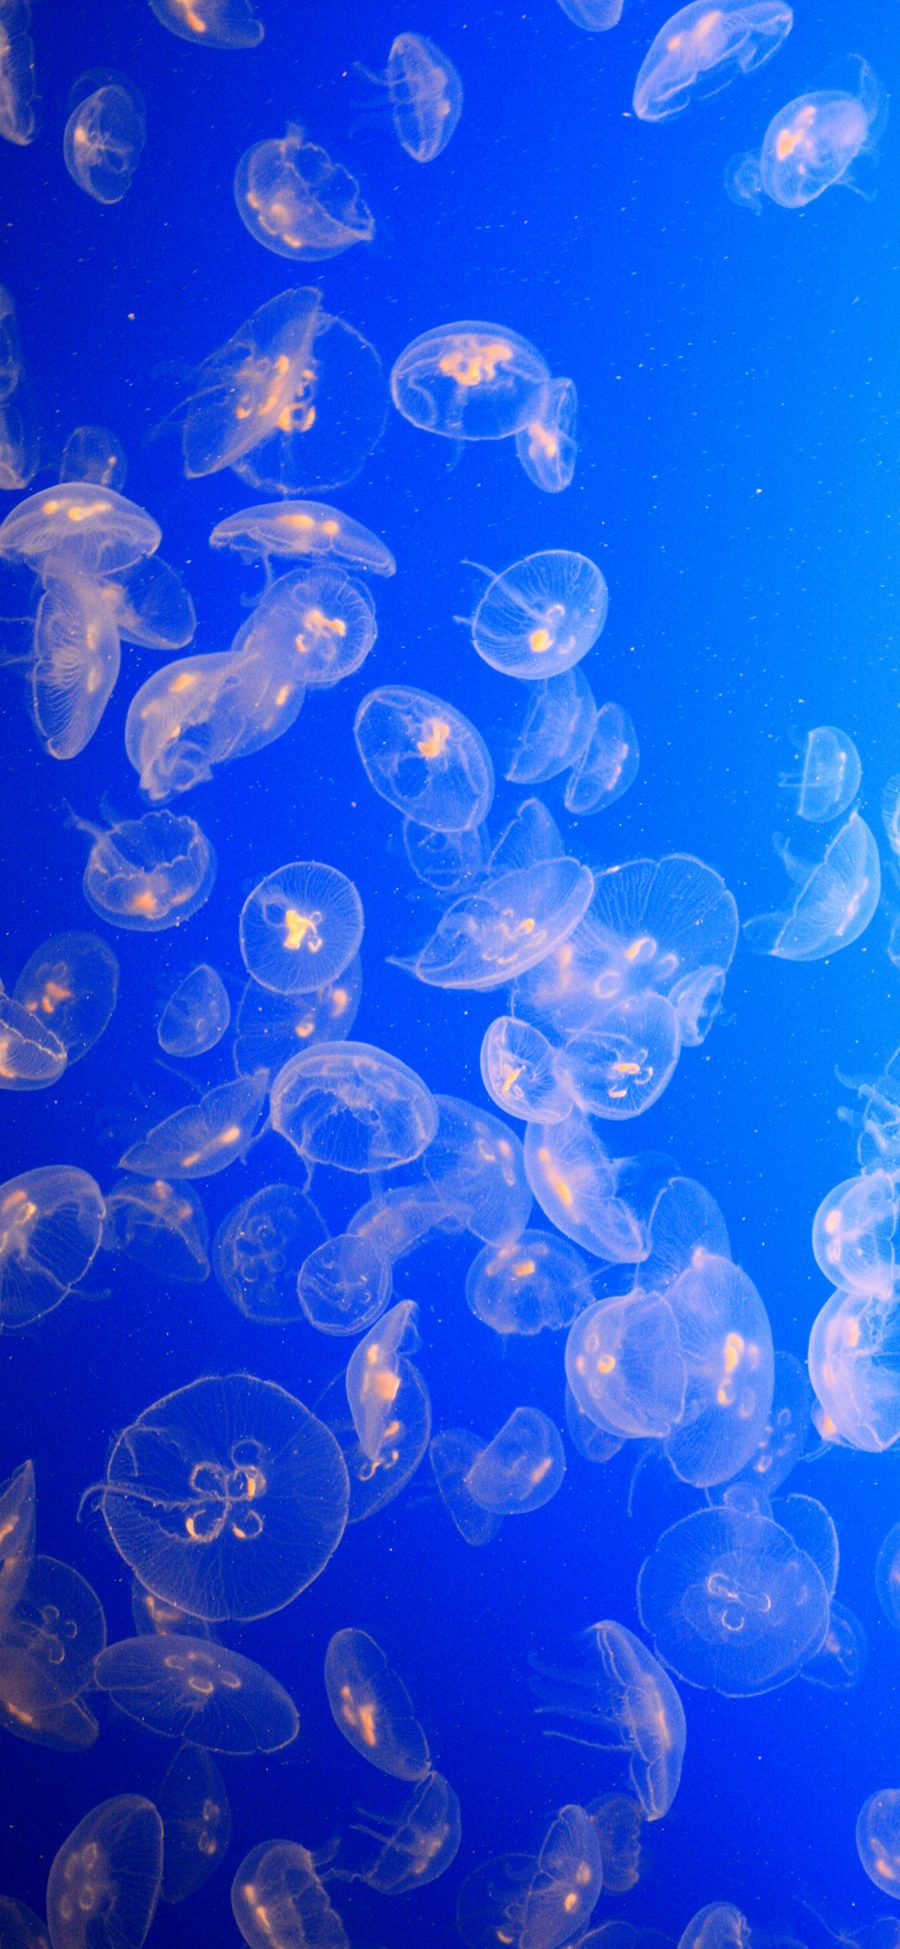 [2436×1125]水母 密集 海洋生物 浮游 唯美 苹果手机壁纸图片